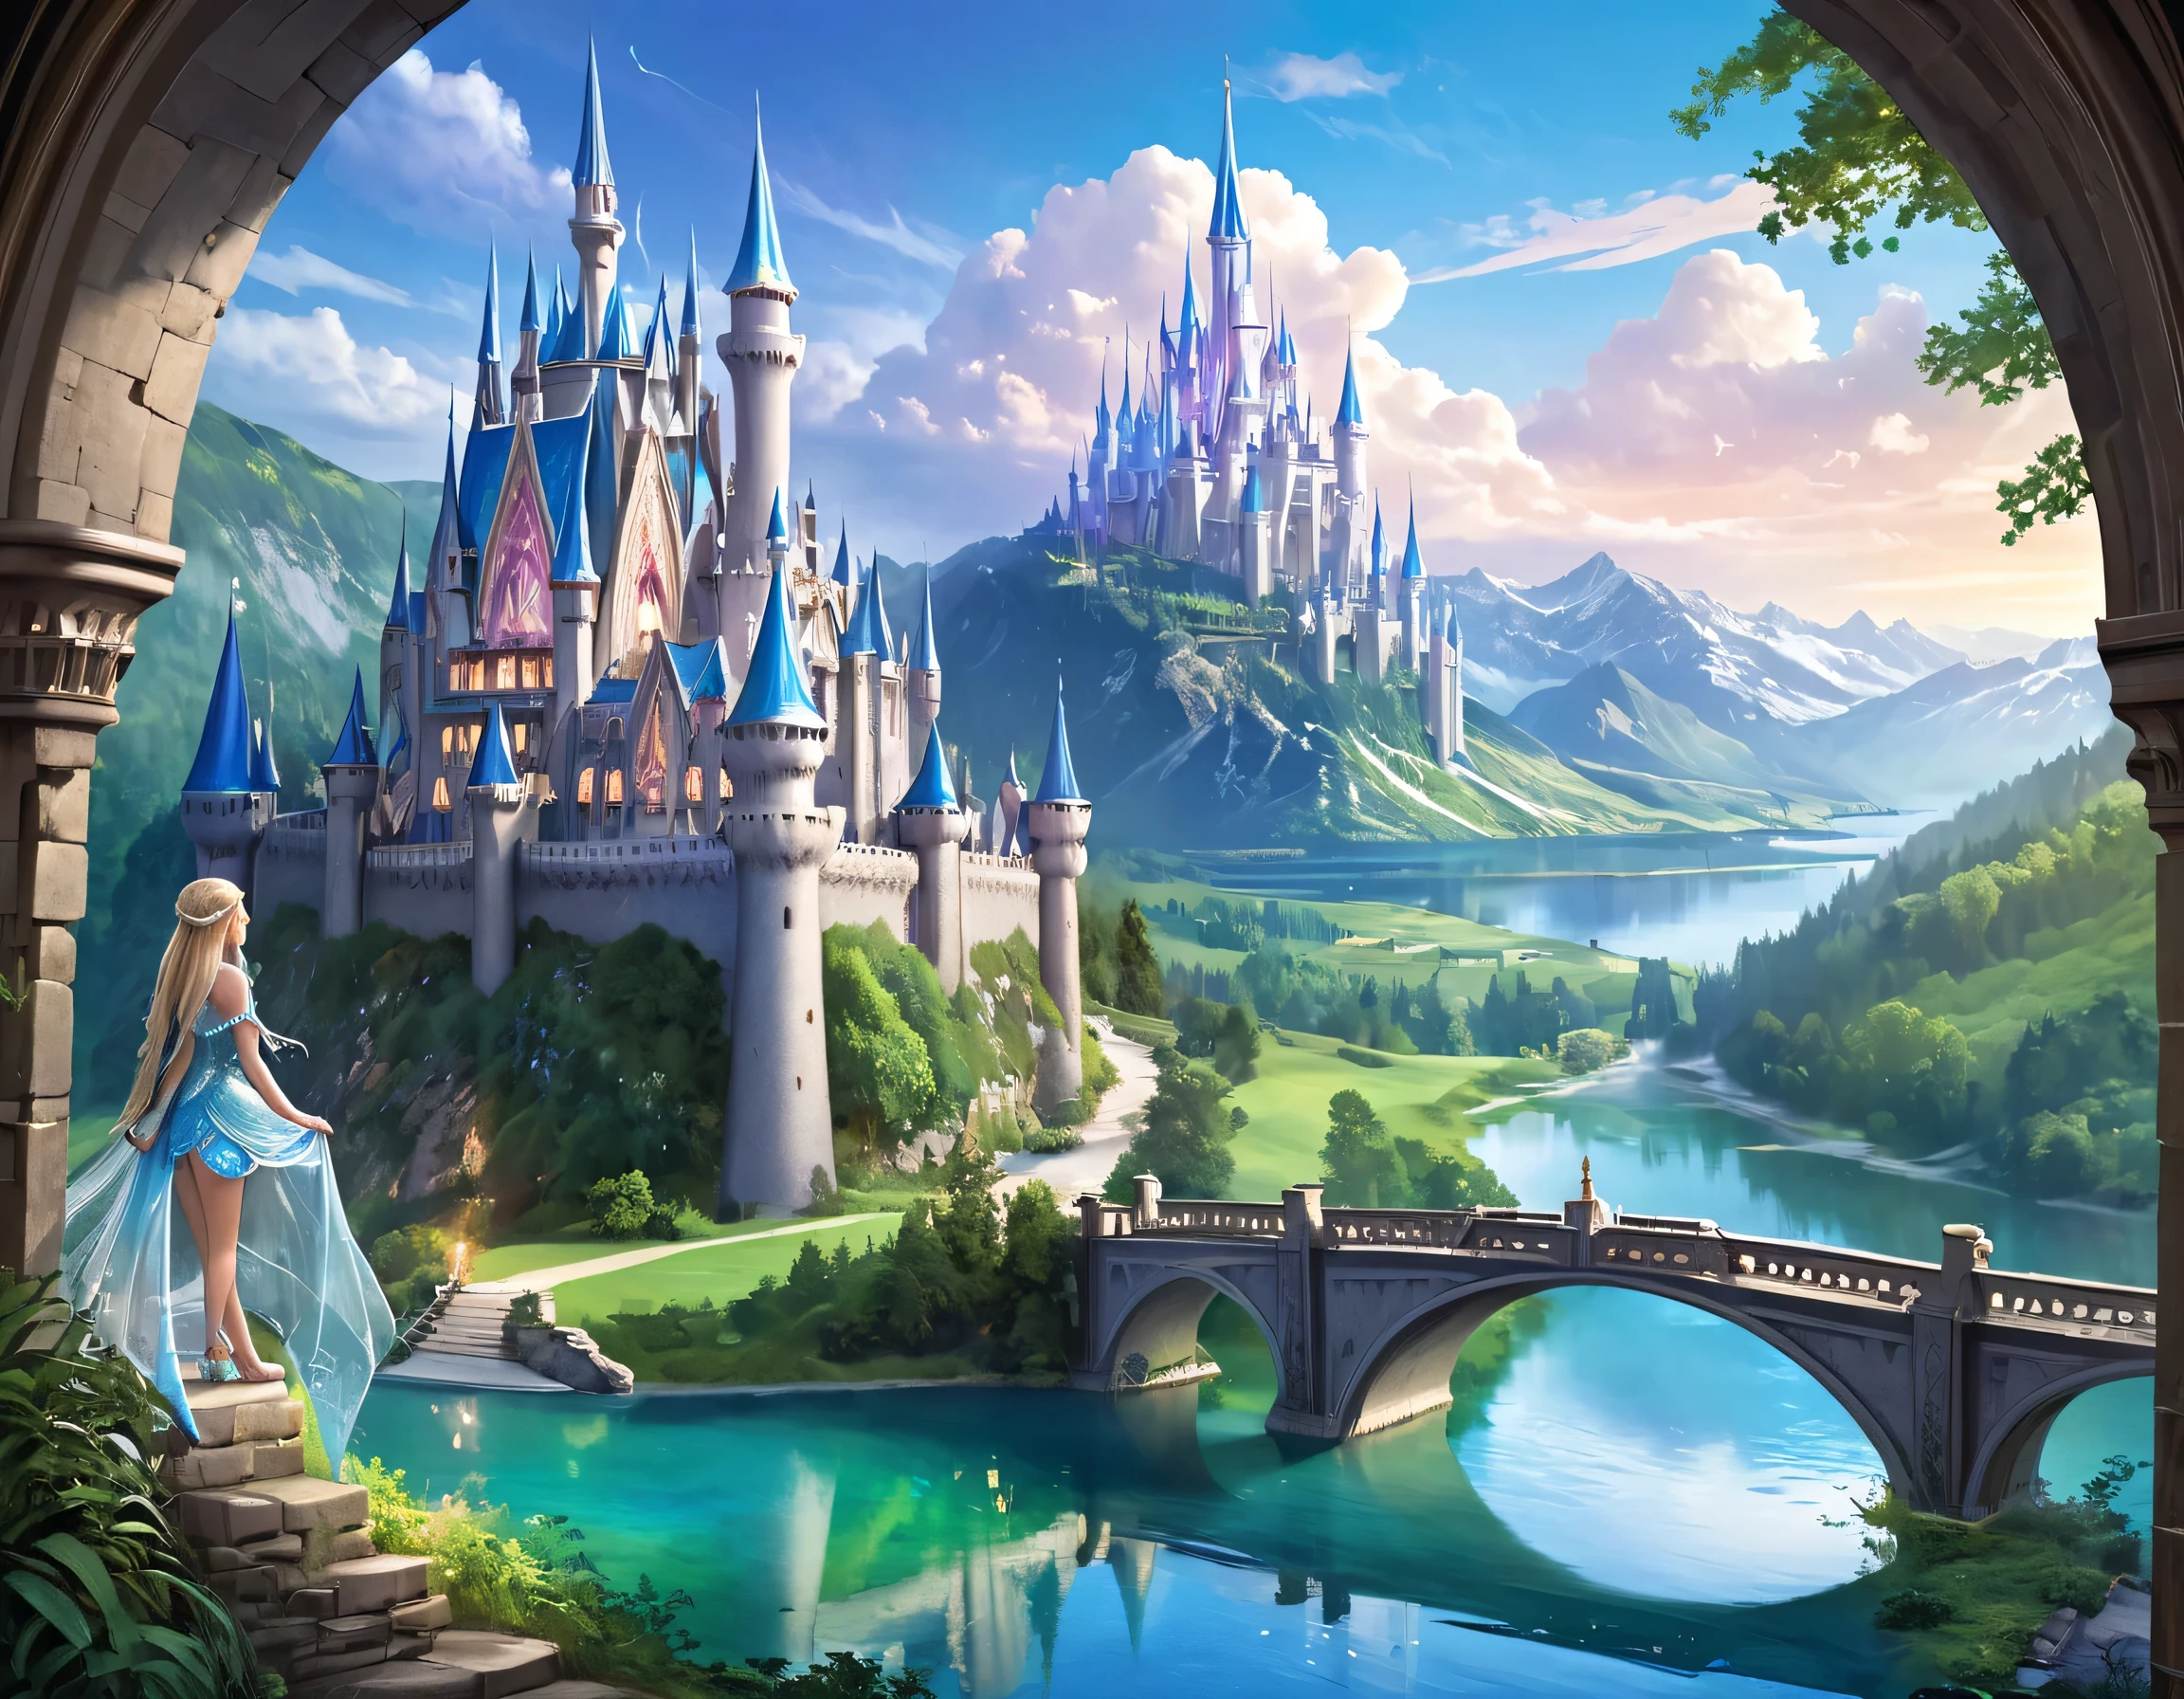 Fantasy-Kunst, RPG art, eine Prinzessin, die durch ihr Fenster auf ein magisches Schloss blickt, eine wunderschöne Elfenprinzessin, die durch ihr Fenster auf ein magisches Schloss blickt, ein beeindruckendes, detailgetreues Schloss, mit Türmen, Brücken, ein Graben, auf einem Berggipfel stehend farbig glasiert_xl, Brandon Woelfel Style page